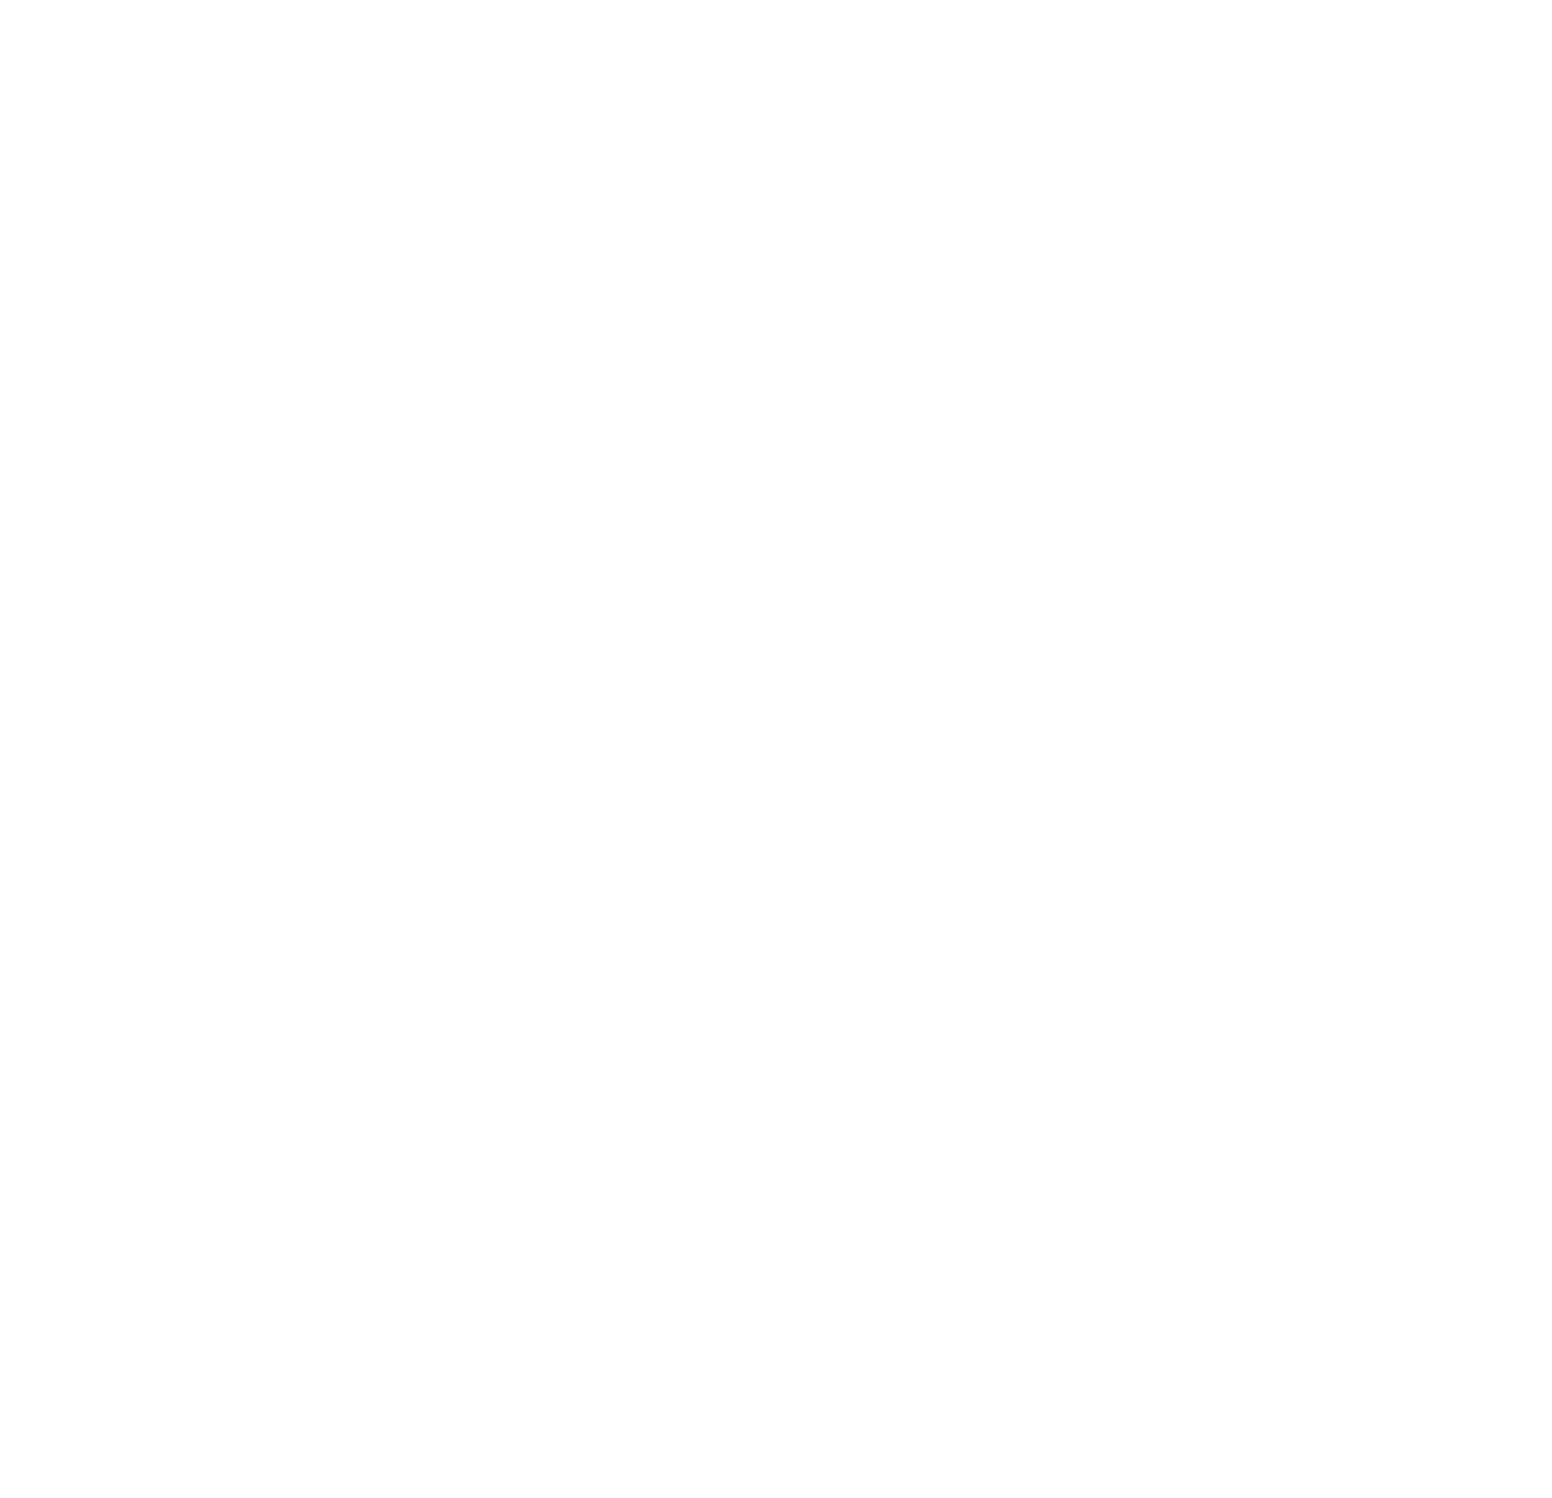 Prologis logo pour fonds sombres (PNG transparent)